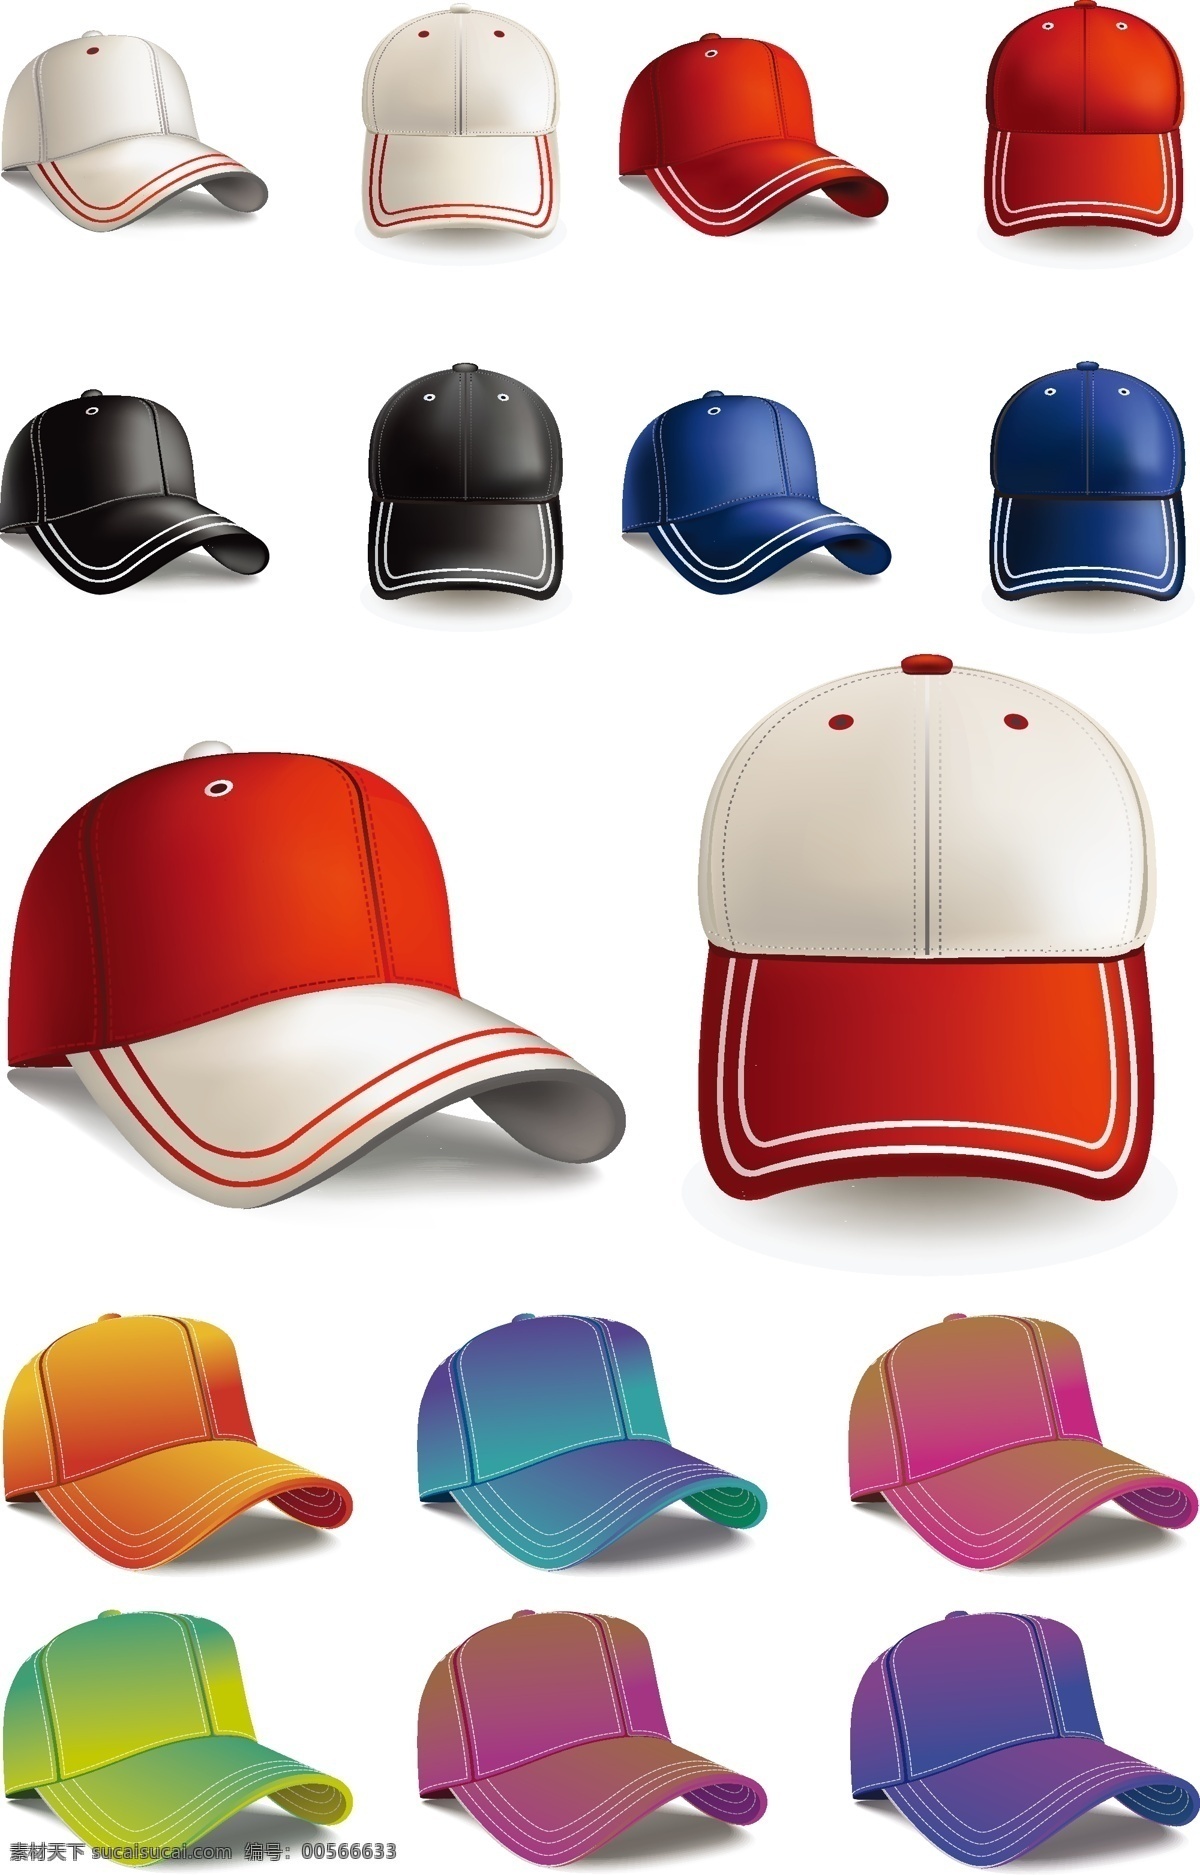 时尚 棒球帽 矢量图 遮阳帽 炫彩帽子 帽子 ai矢量素材 其他设计 矢量